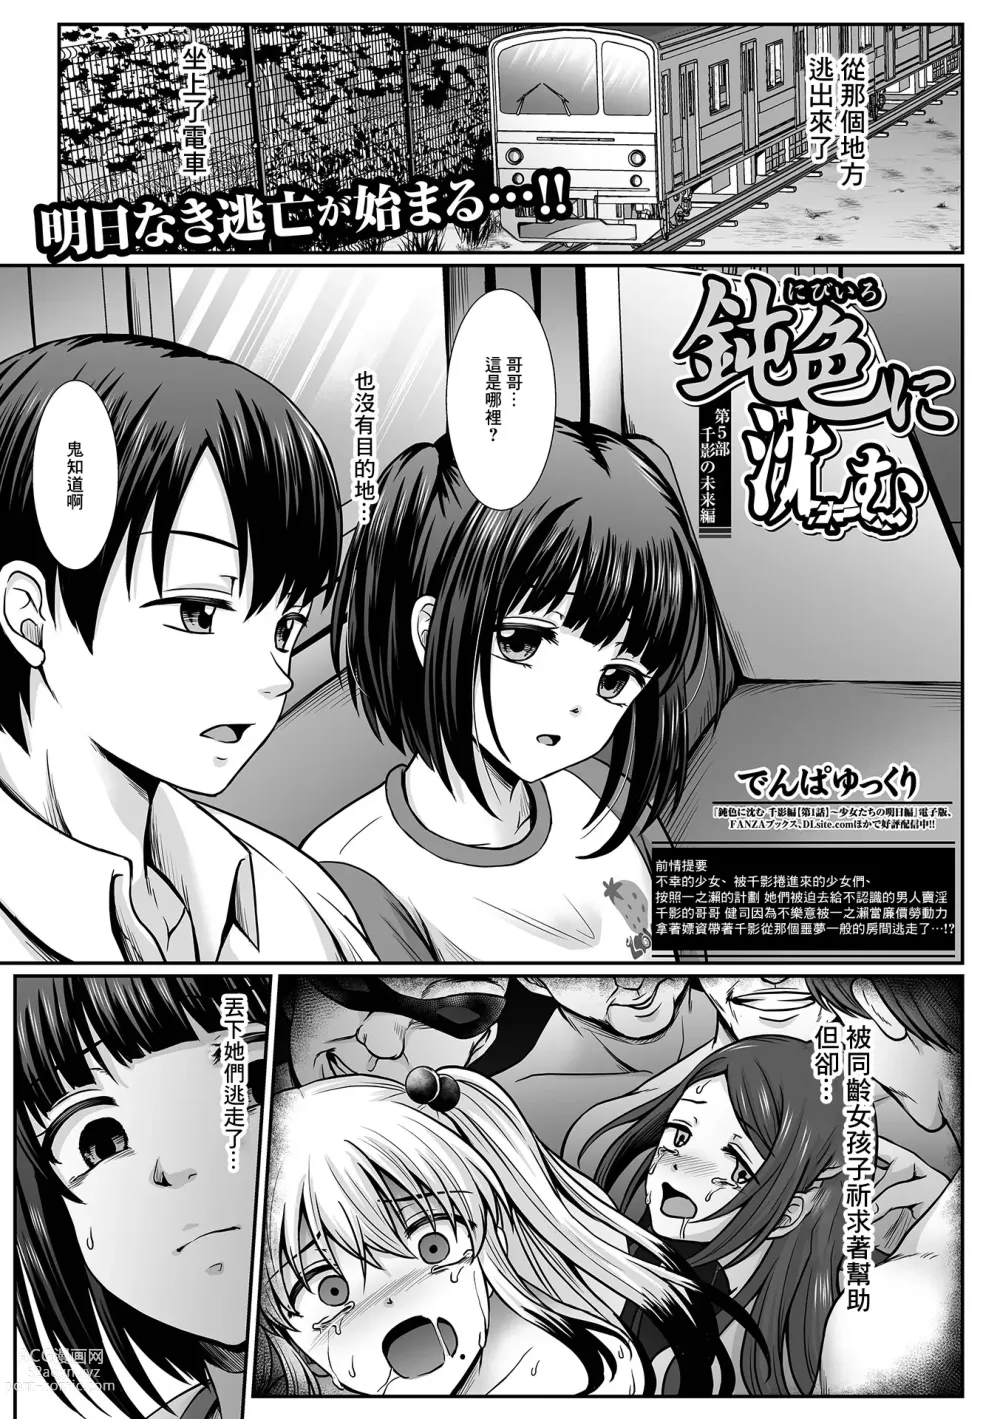 Page 1 of manga Nibiiro ni Shizumu Dai 5-bu Chikage no Mirai Hen